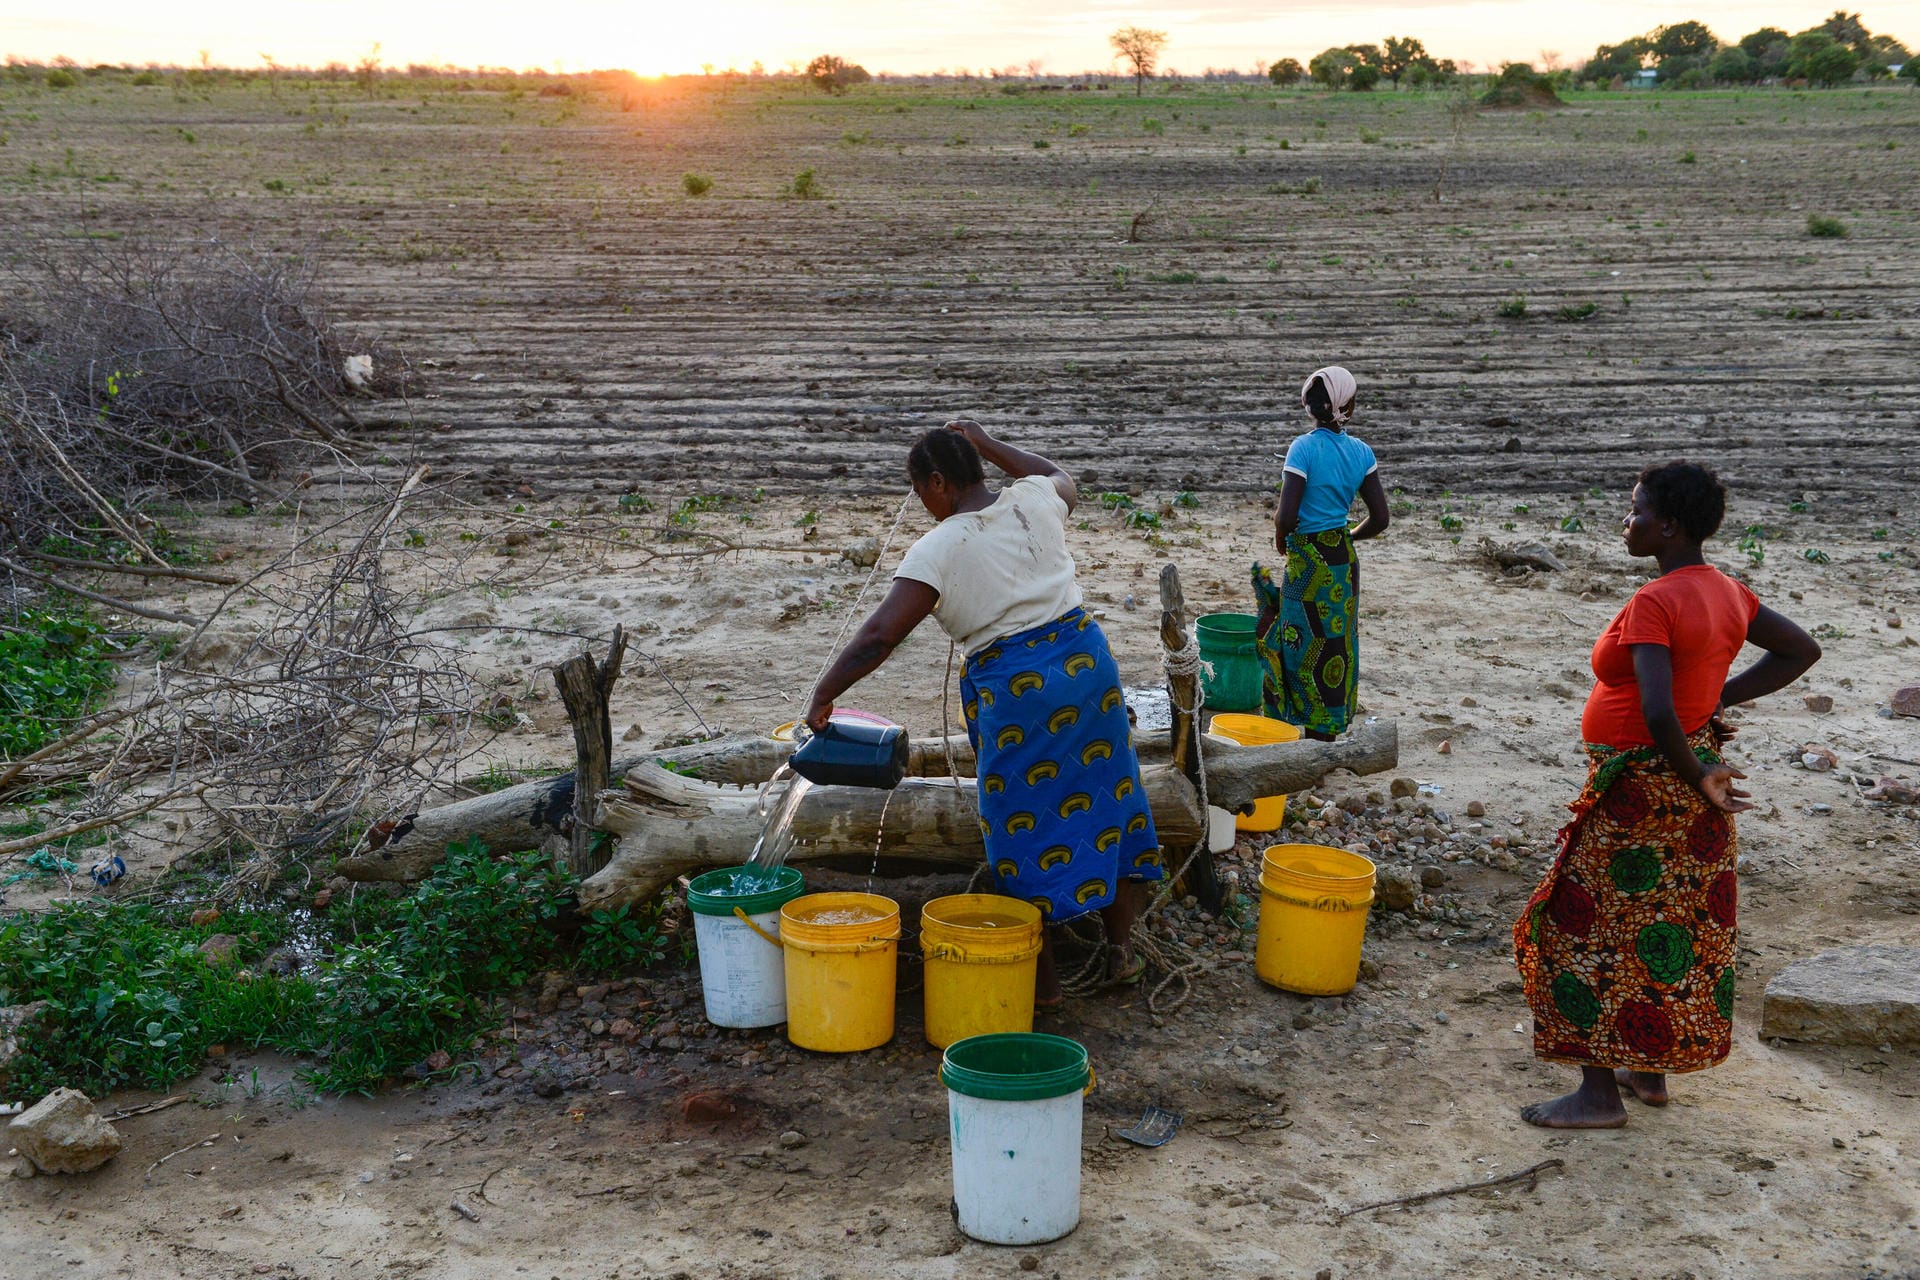 Platz 1: Sambia – Der südafrikanische Staat ist bekannt für die beeindruckenden Victoria-Wasserfälle an der Grenze zu Simbabwe. Dennoch leidet das Land unter langanhaltender Dürre. Mehr als 1,2 Millionen Menschen haben nicht genug zu essen – fast sieben Prozent der Bevölkerung. Die steigenden Nahrungsmittelpreise und Einkommensverluste wegen der Corona-Krise verschärfen das Problem.